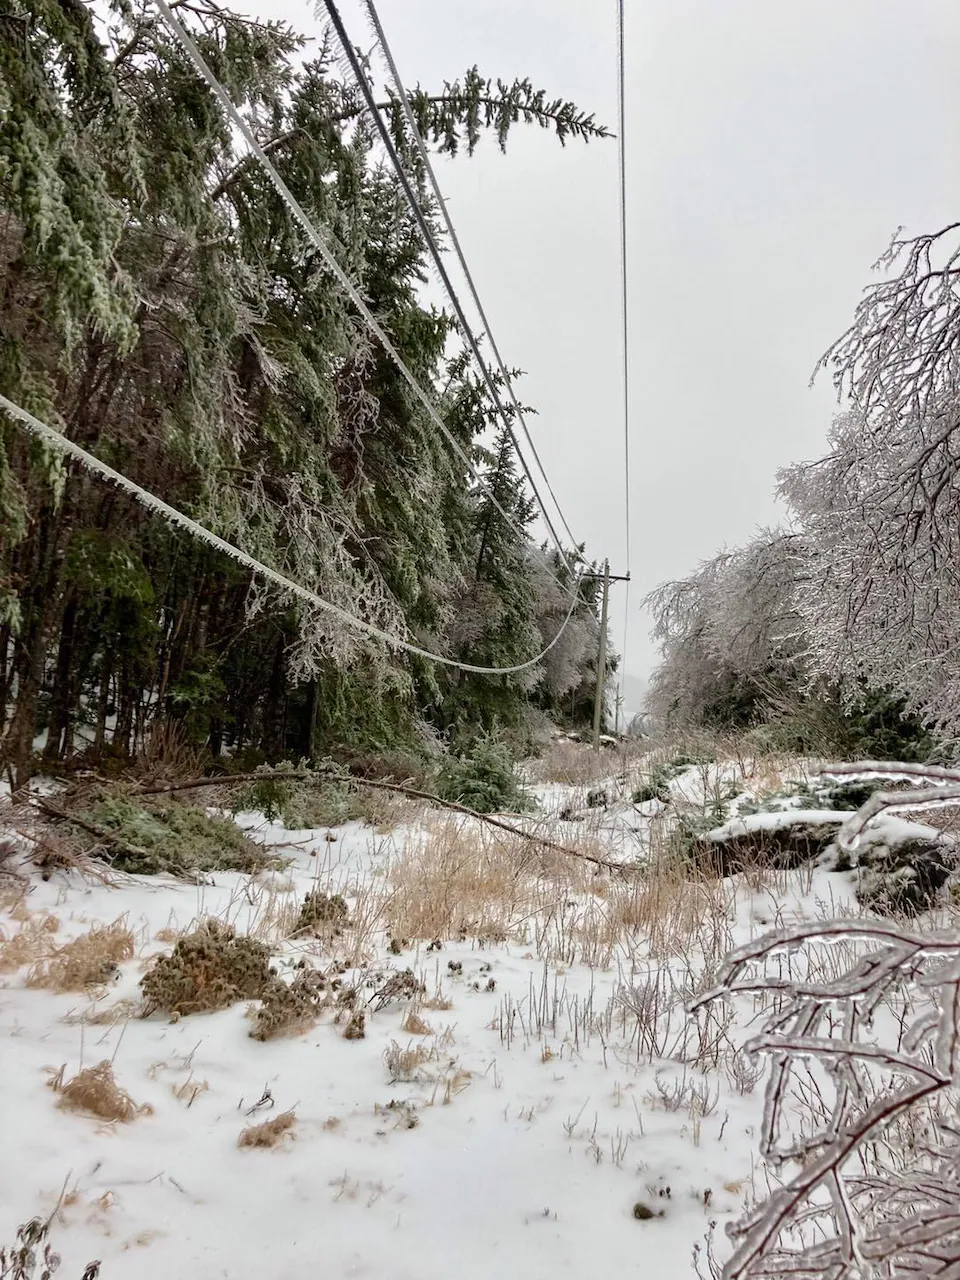 Des lignes électriques recouvertes de glace dans une région de campagne frappée par la tempête.